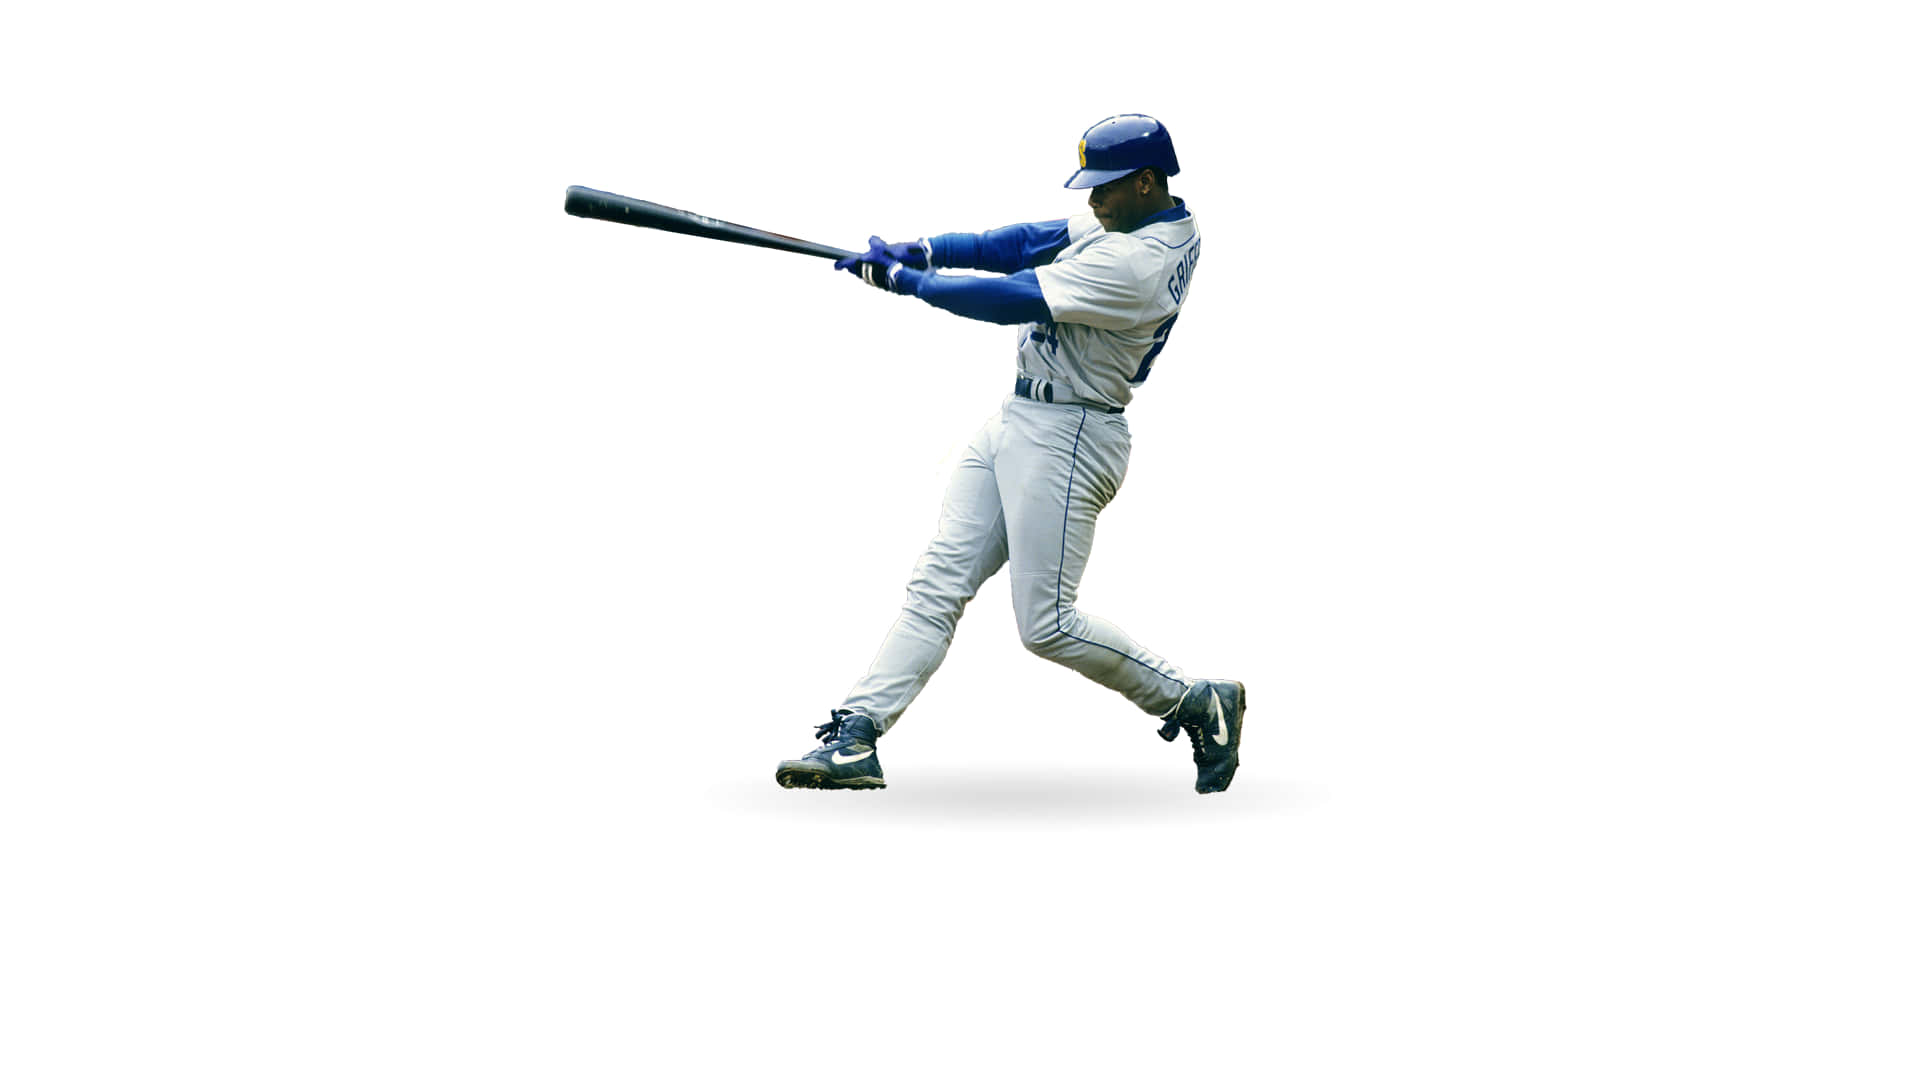 Illeggendario Giocatore Di Baseball Ken Griffey Jr È Ritratto Mentre Fa Un Swing Con Il Battitore. Sfondo